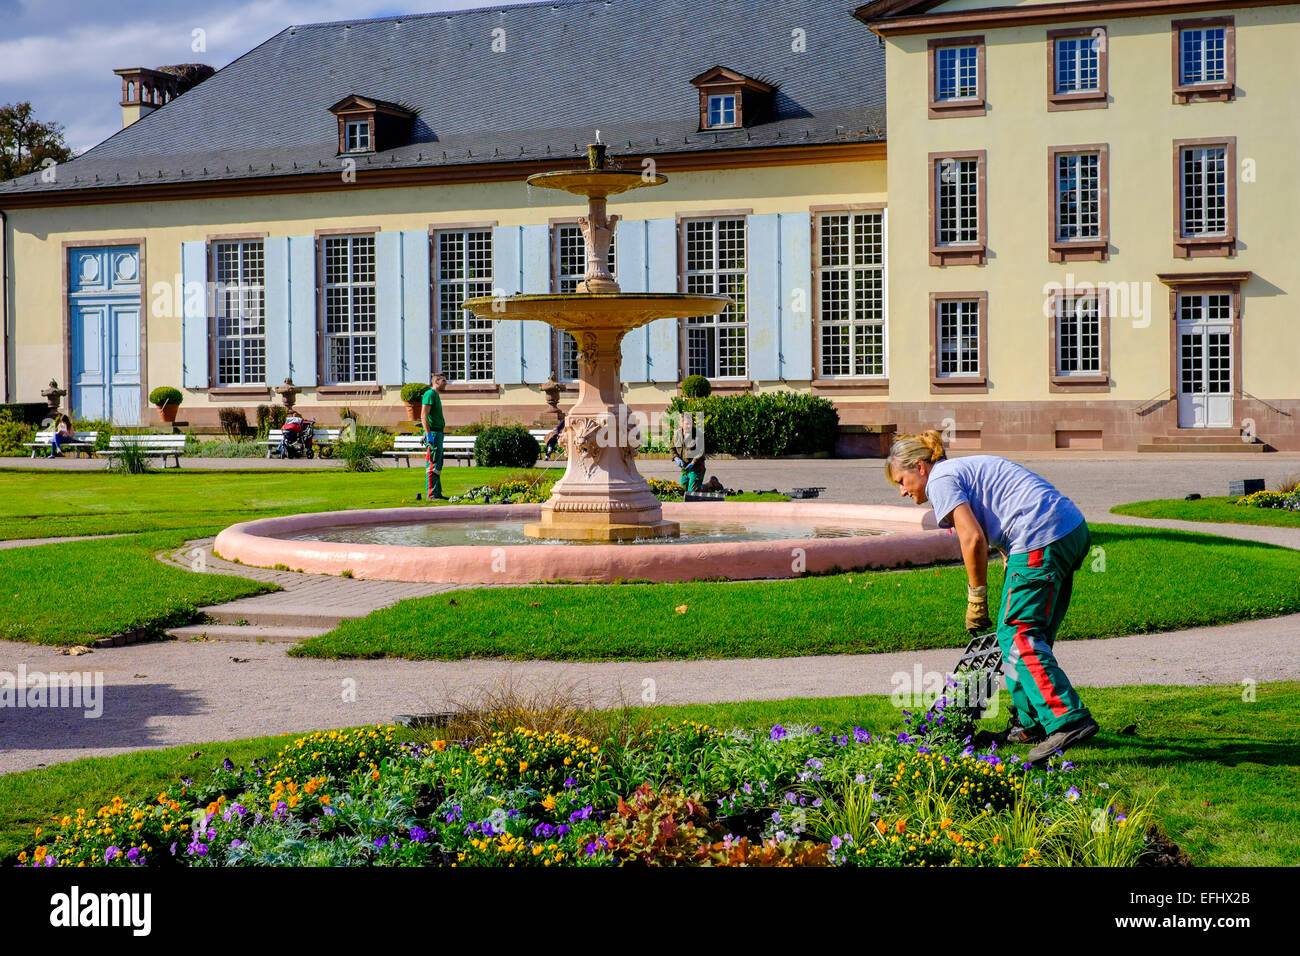 Jardiniers et pavillon Josephine Parc de l'Orangerie Strasbourg Alsace France Europe Banque D'Images